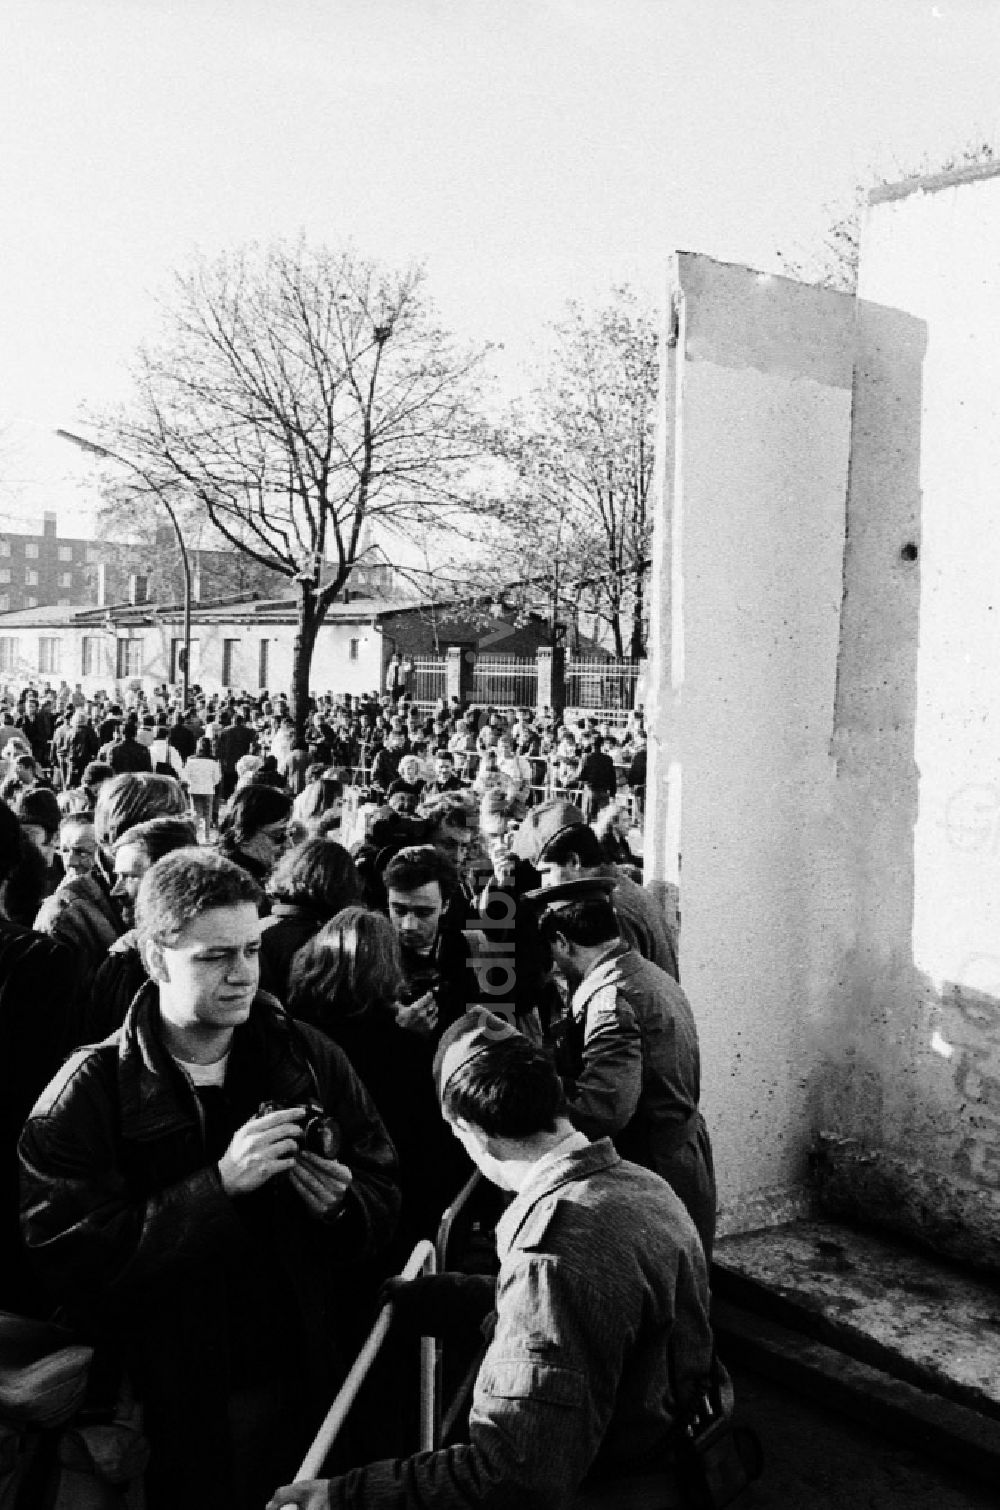 DDR-Fotoarchiv: Berlin - Öffnung eines Grenzüberganges GüST an der Bernauer Straße nach dem Fall der Mauer in Berlin in der DDR